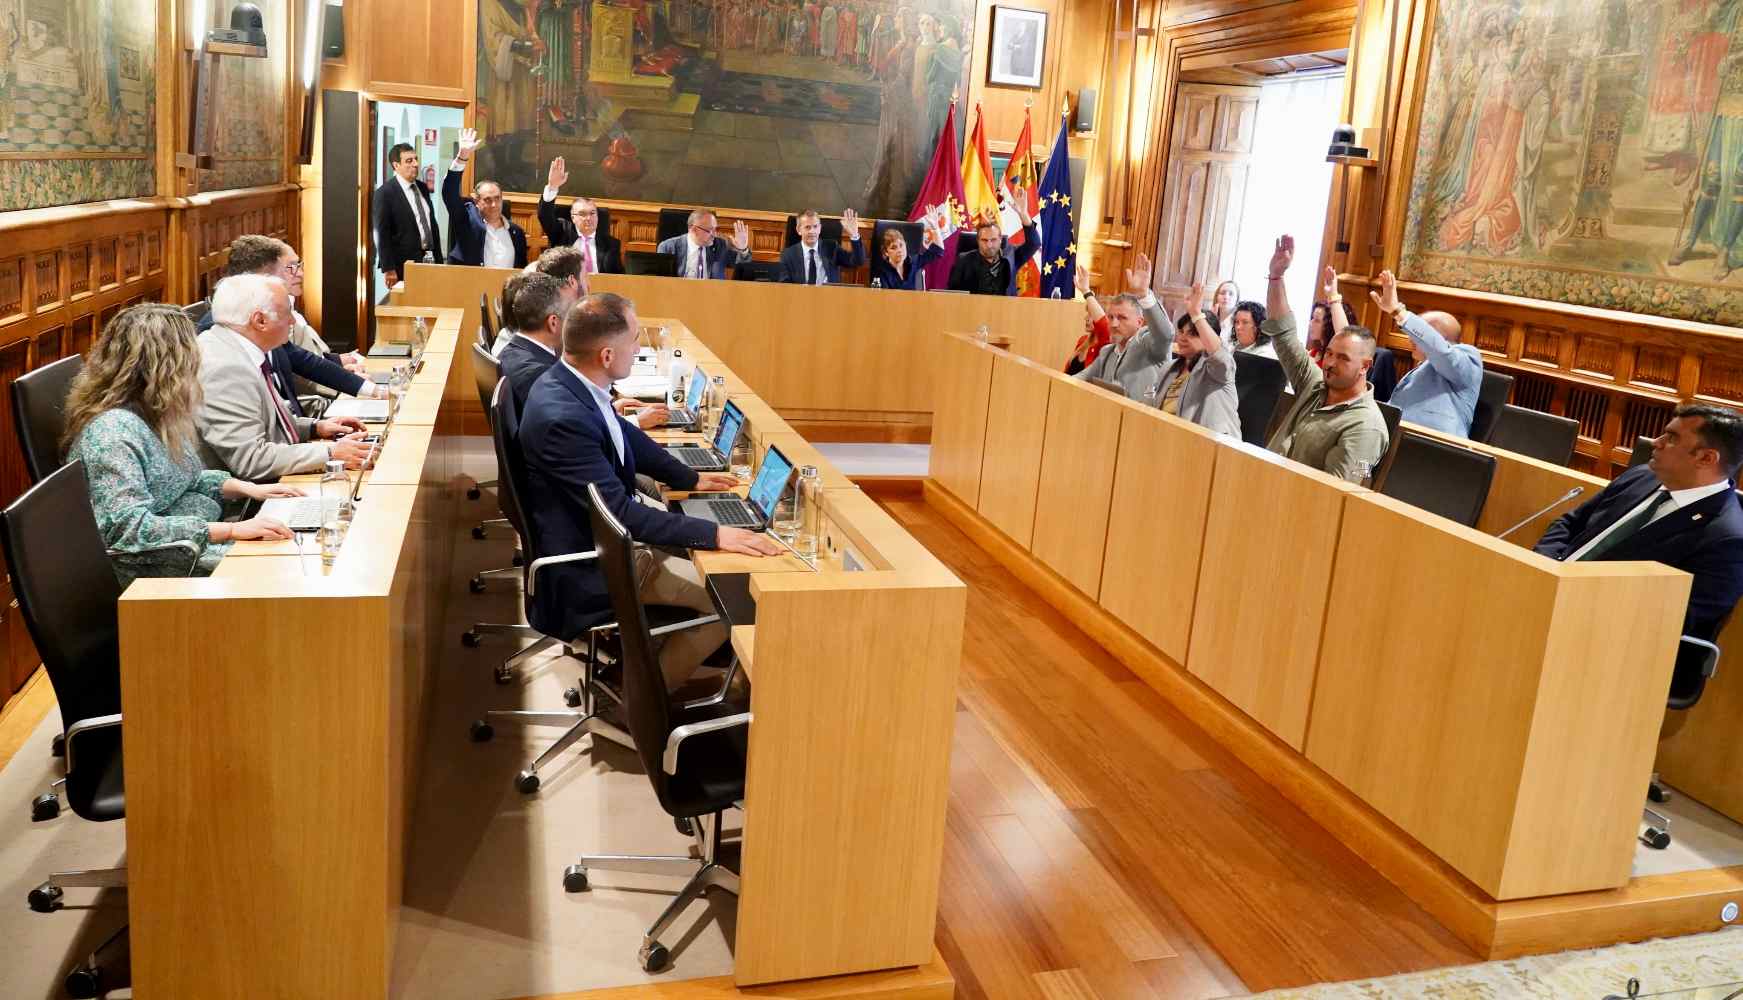 La Diputación de León le dice 'sí' a la Autonomía Leonesa